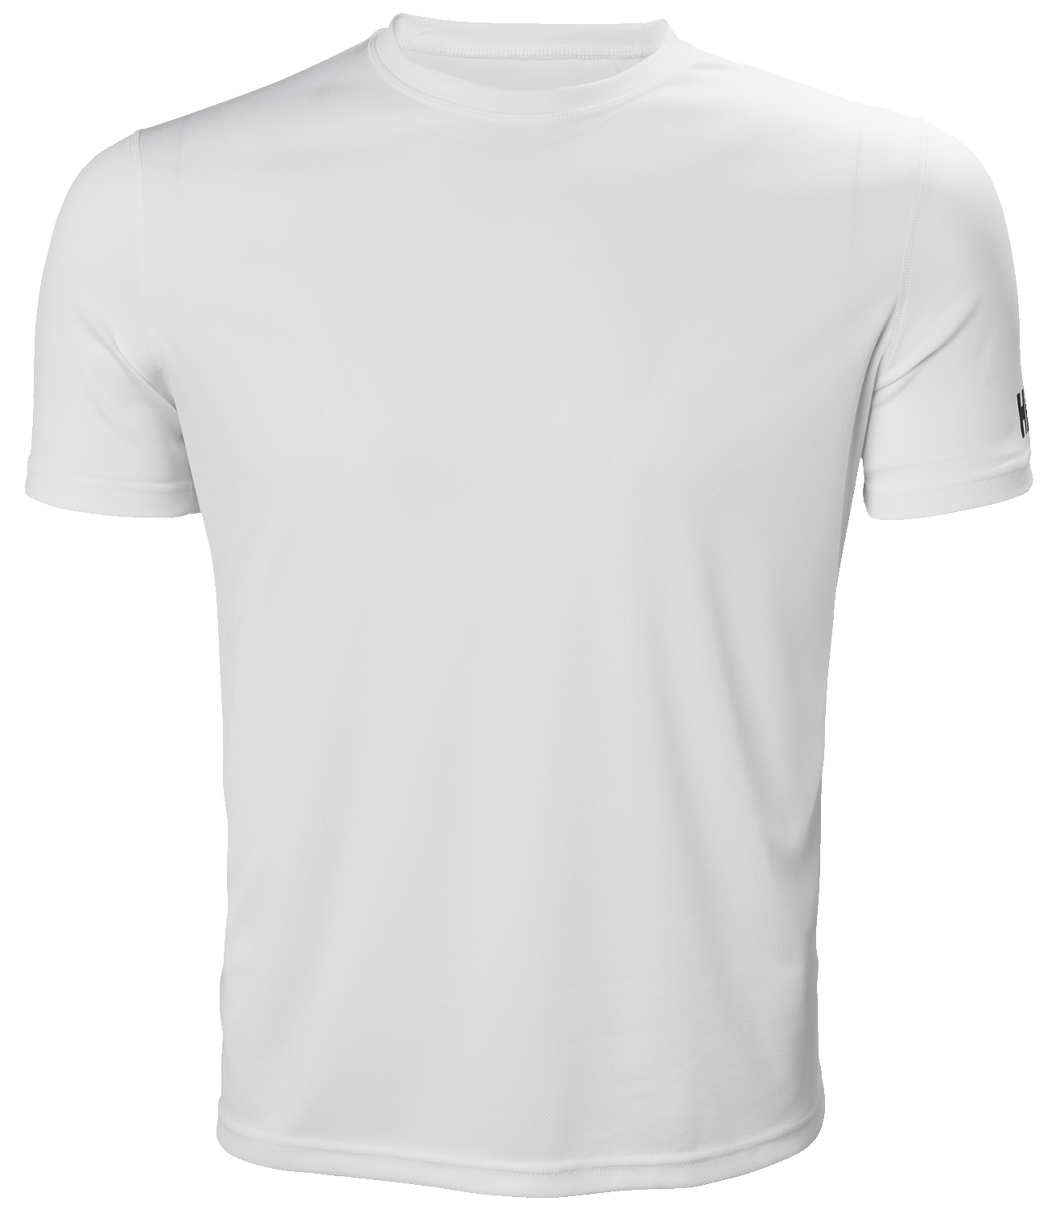 Helly Hansen Men's Short Sleeve Technical T-Shirt (White)